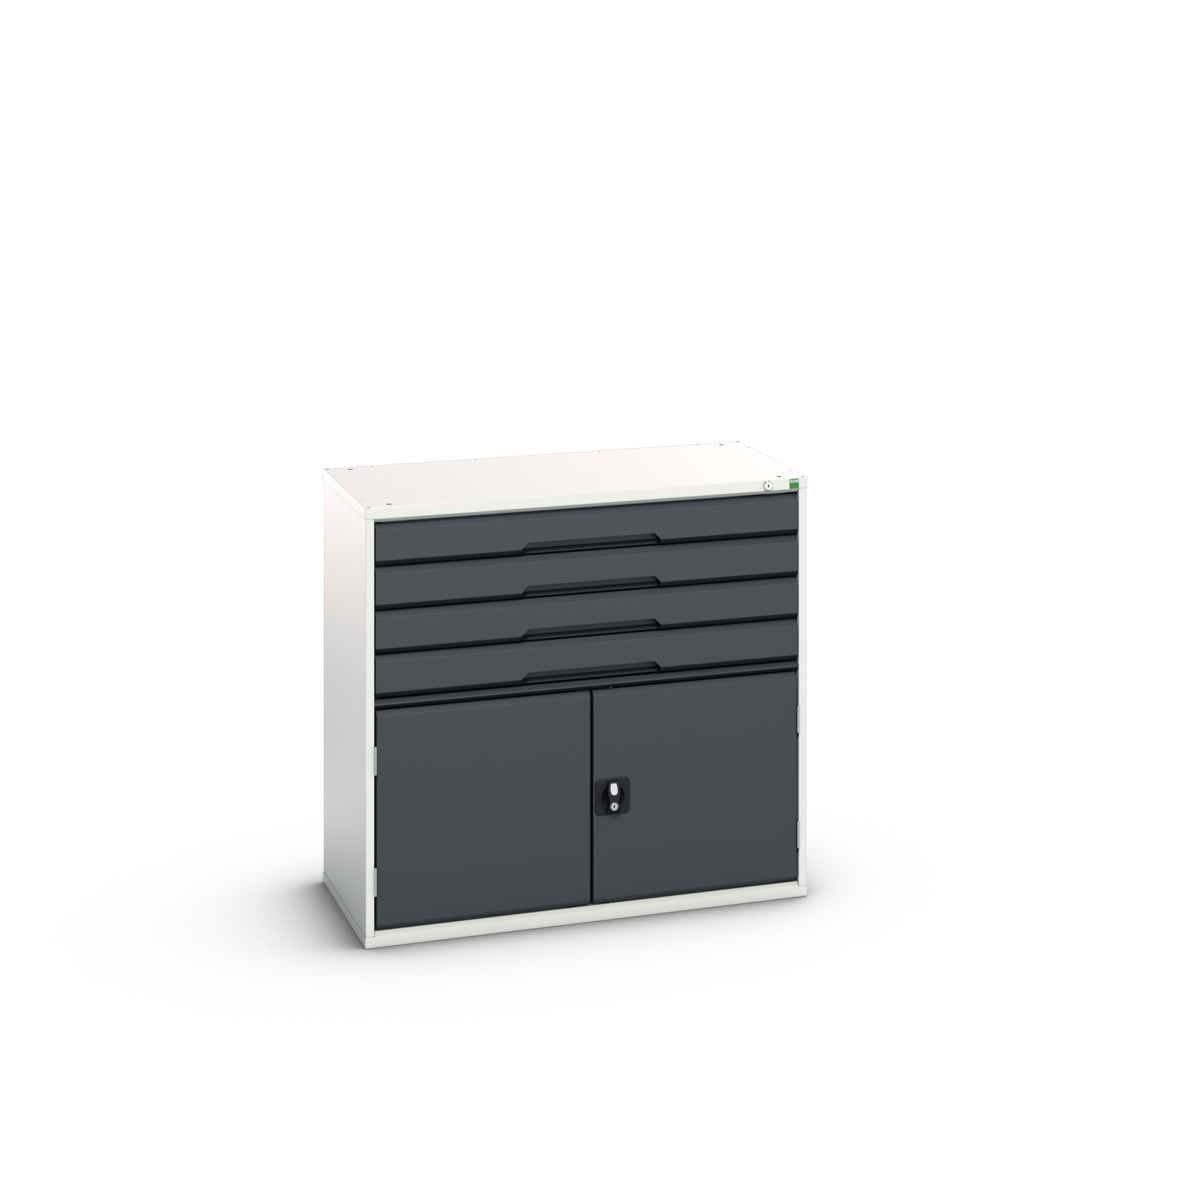 16925265.19 - verso drawer-door cabinet